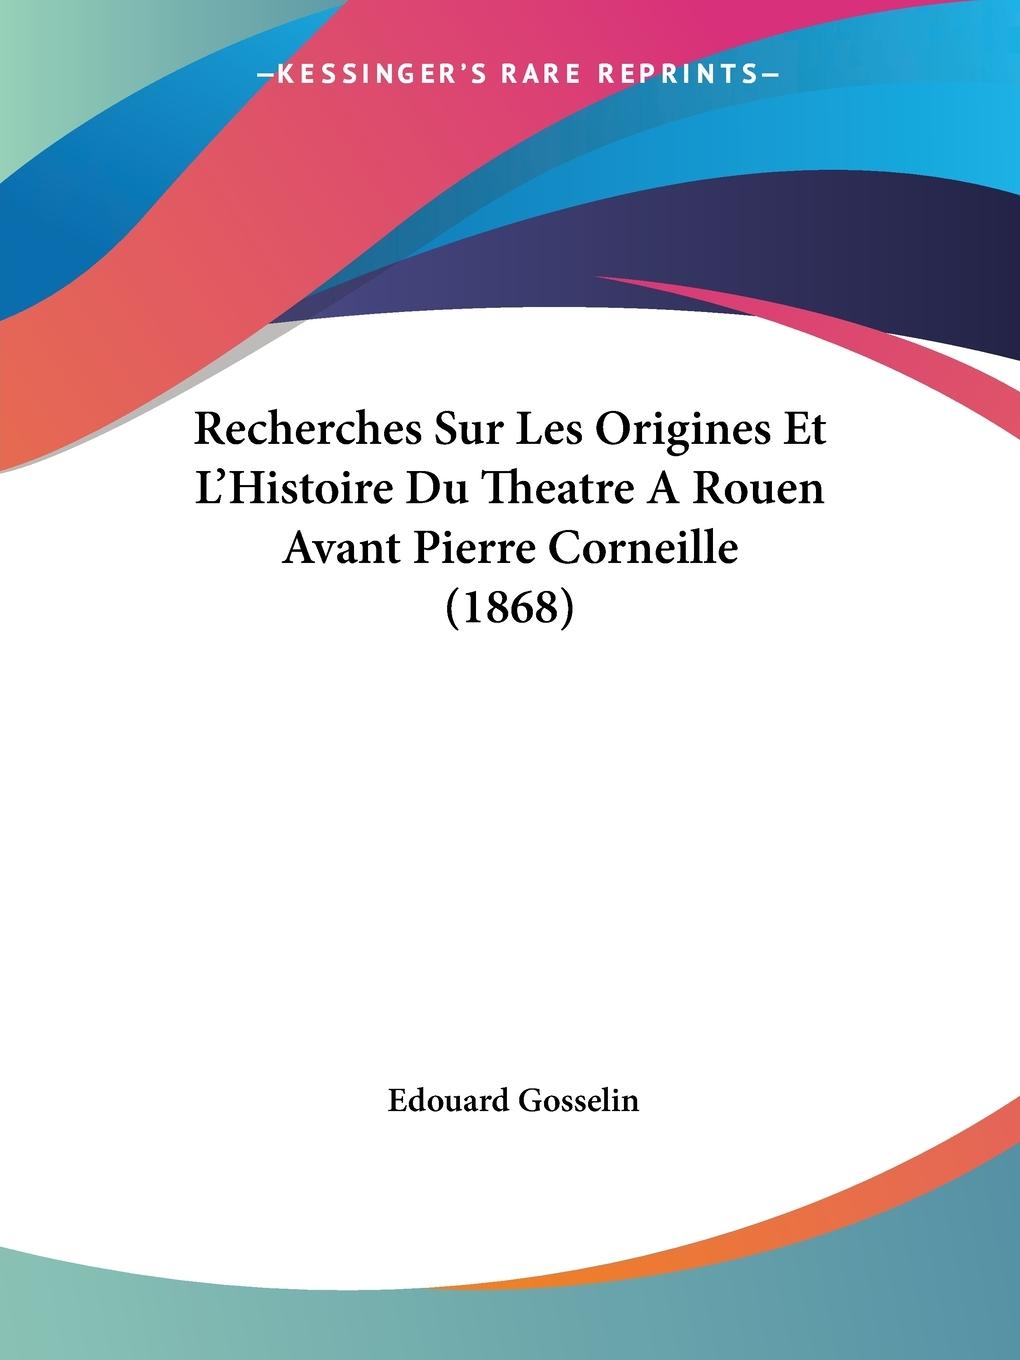 Recherches Sur Les Origines Et L Histoire Du Theatre A Rouen Avant Pierre Corneille (1868) - Gosselin, Edouard